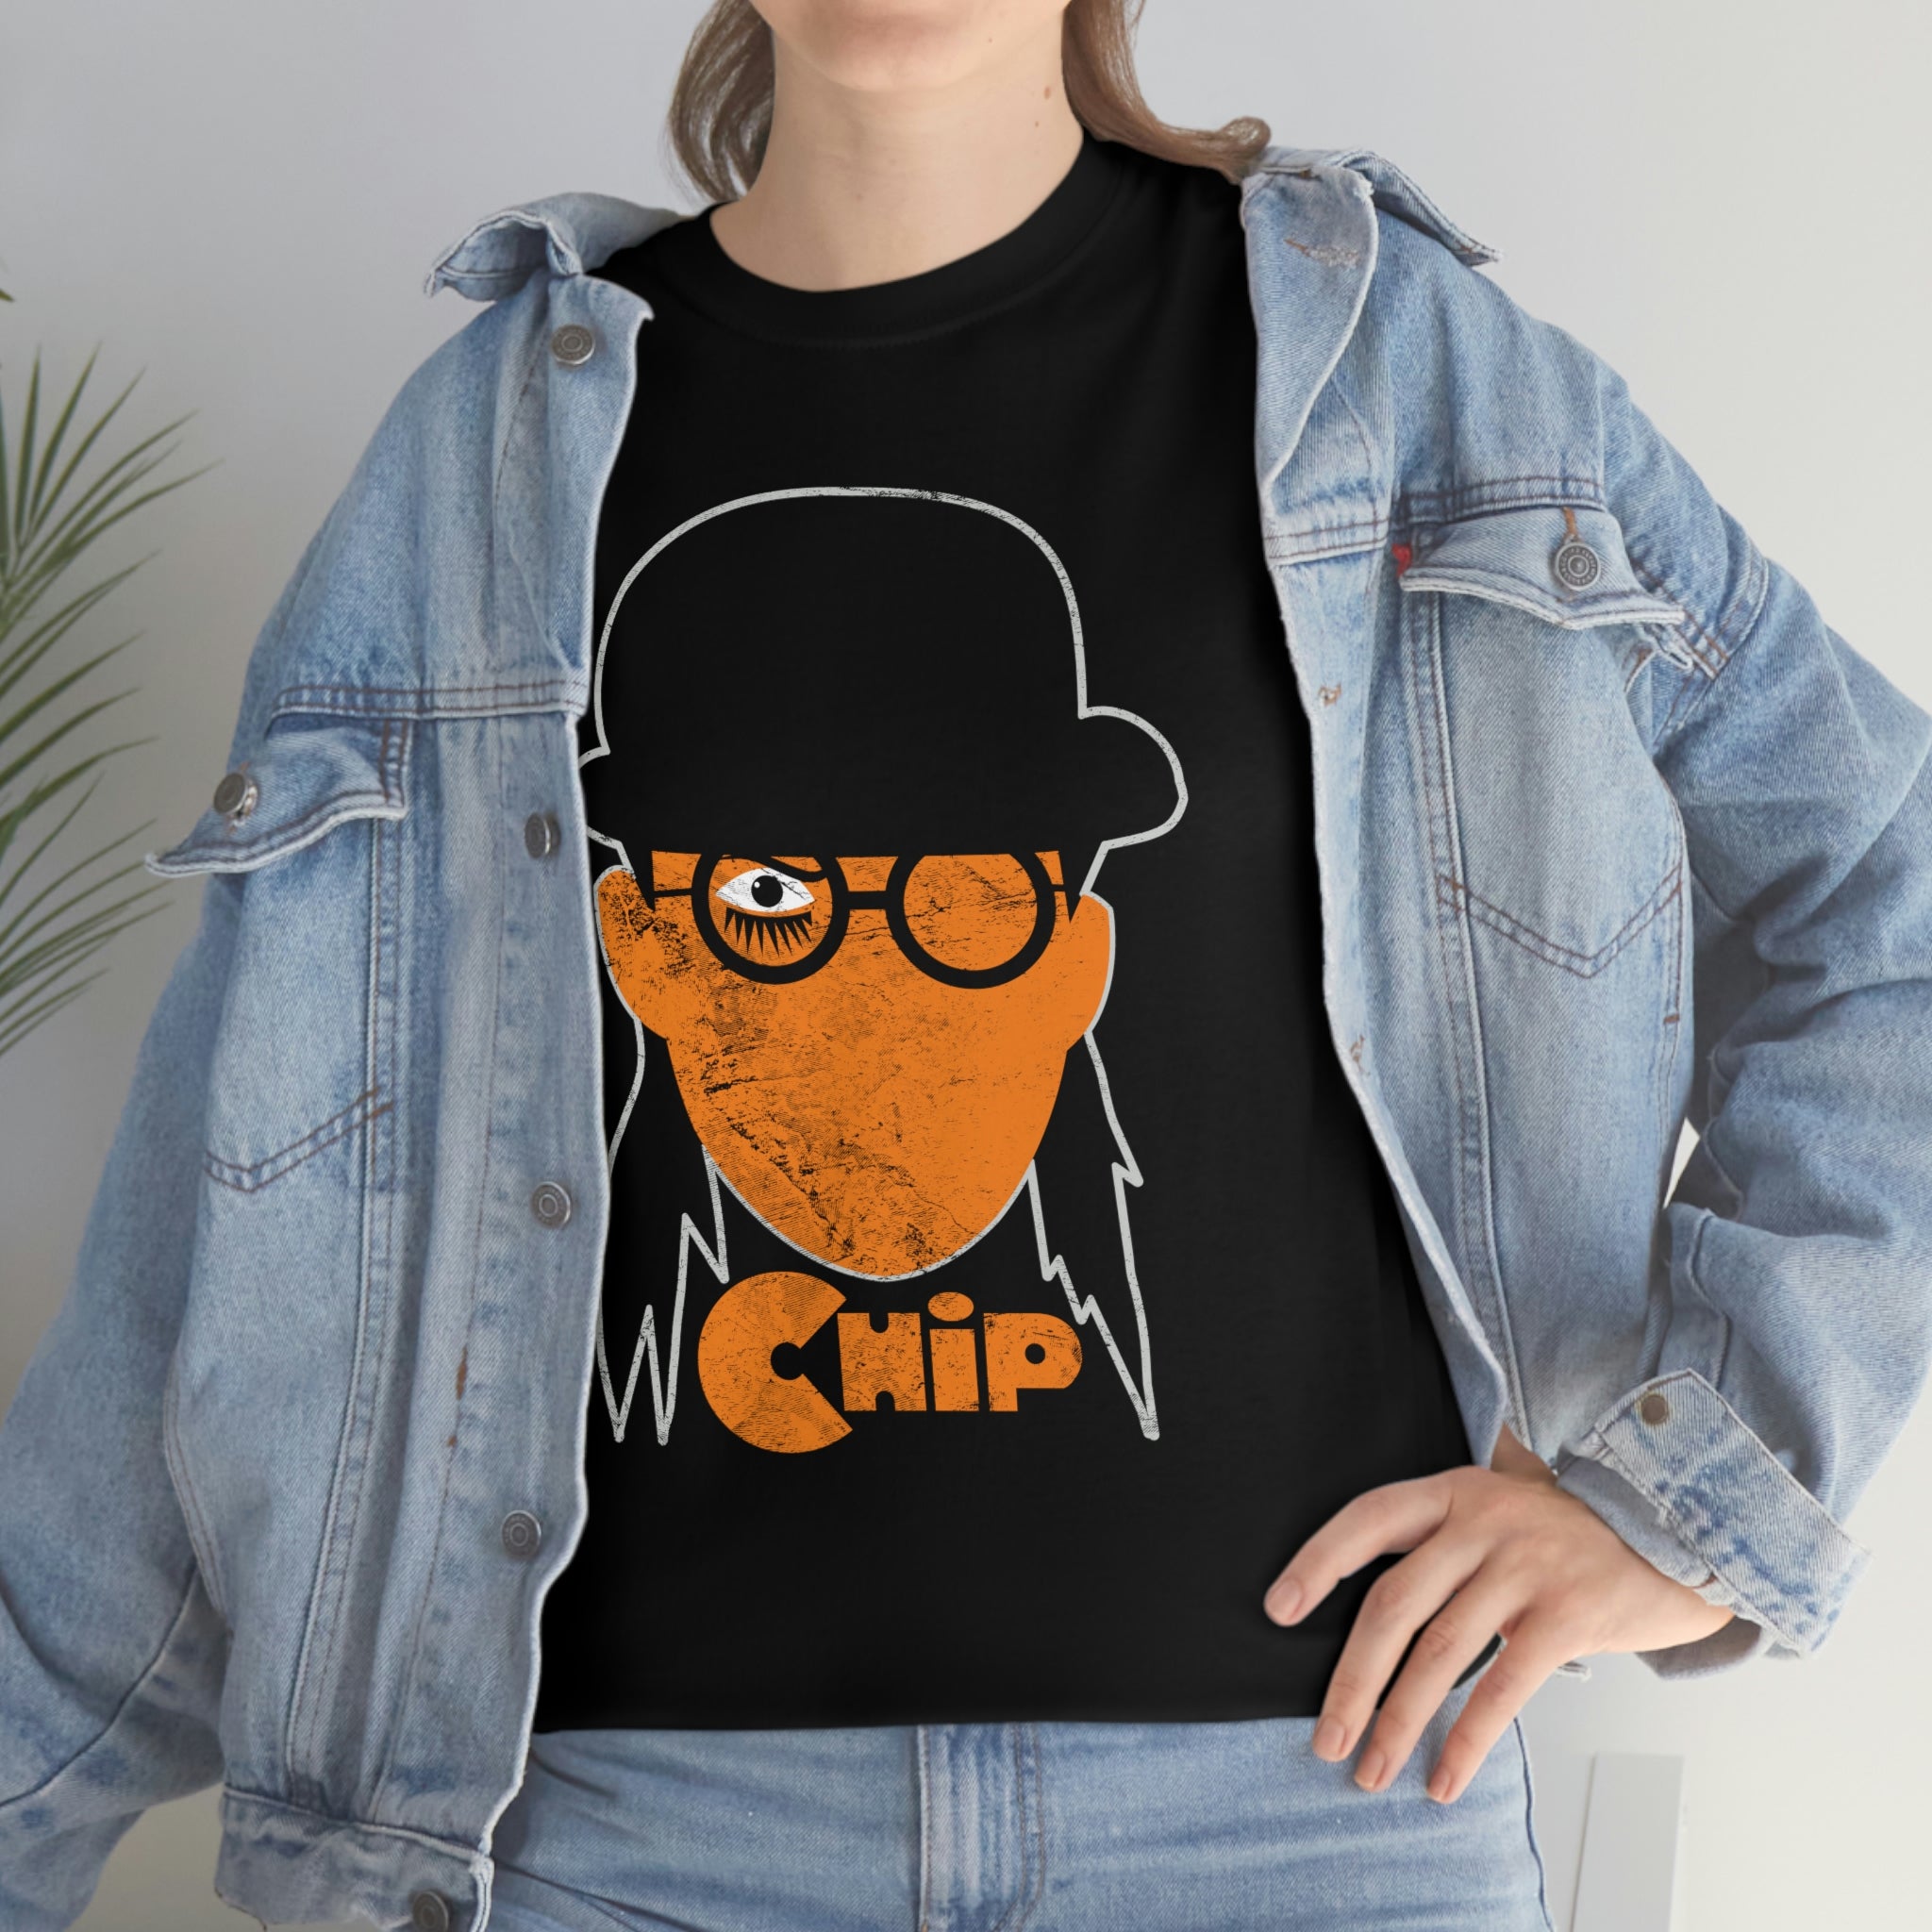 Chip Orange Distressed Standard Fit Dark Edition Cotton Shirt